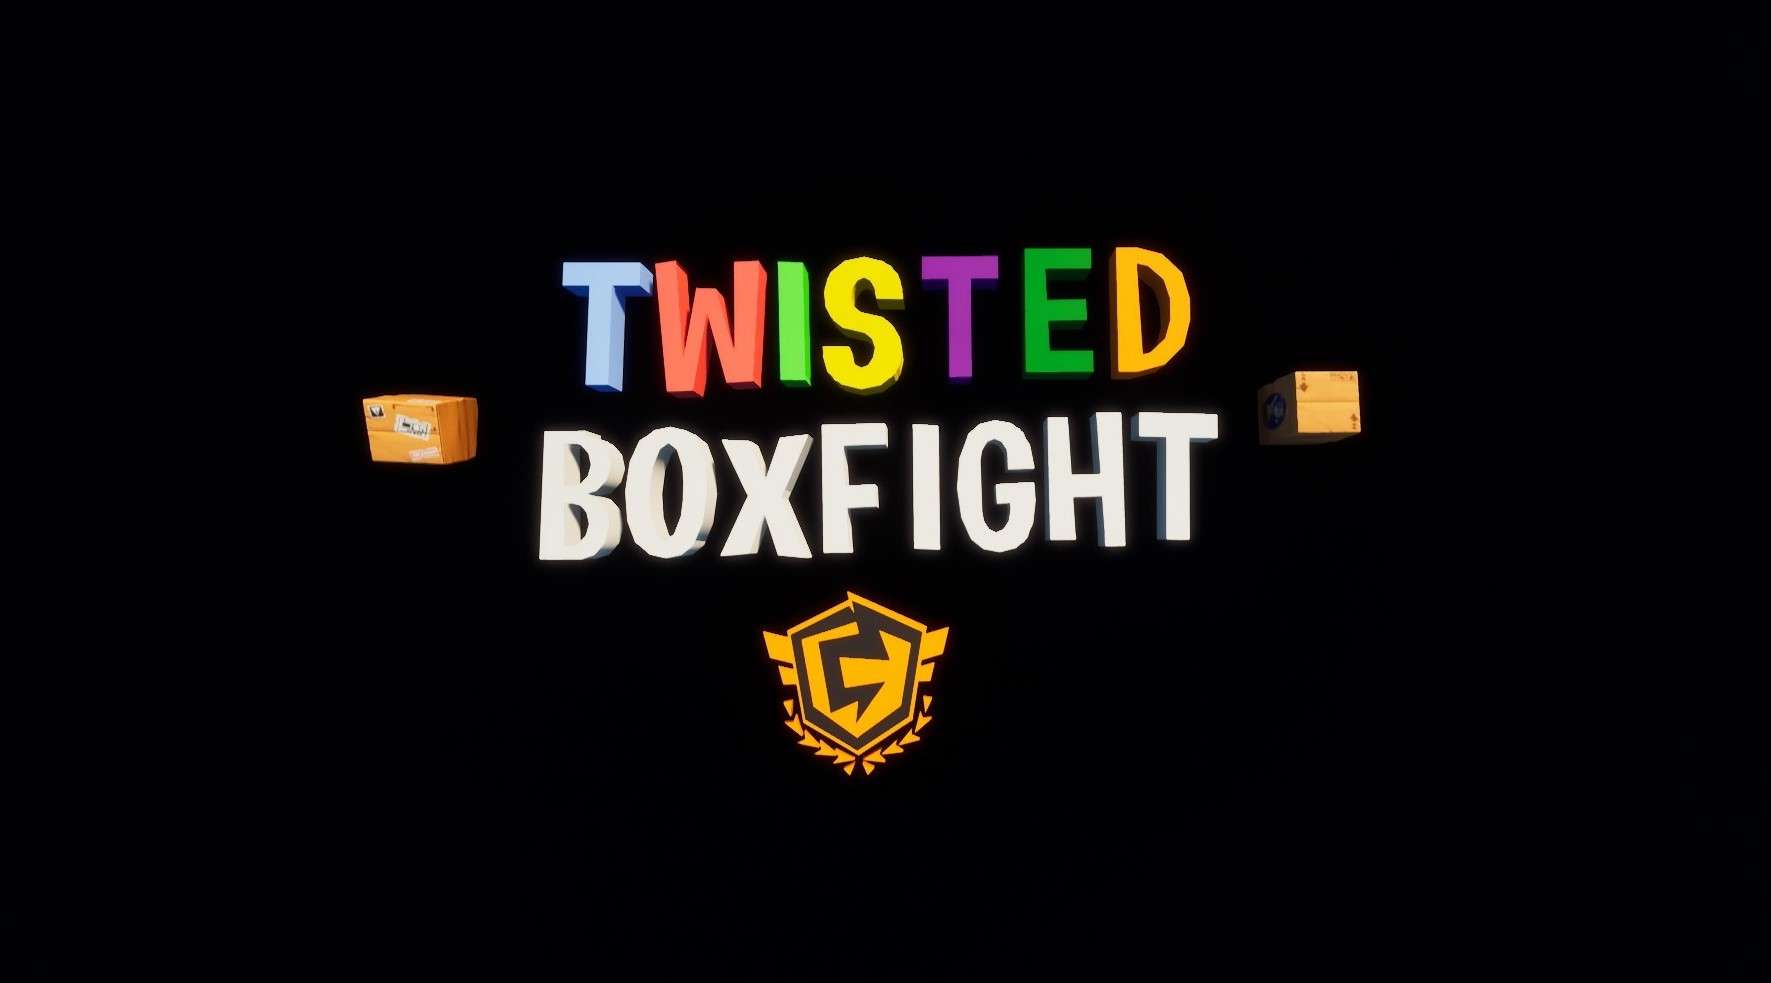 TWISTED BOXFIGHT image 3